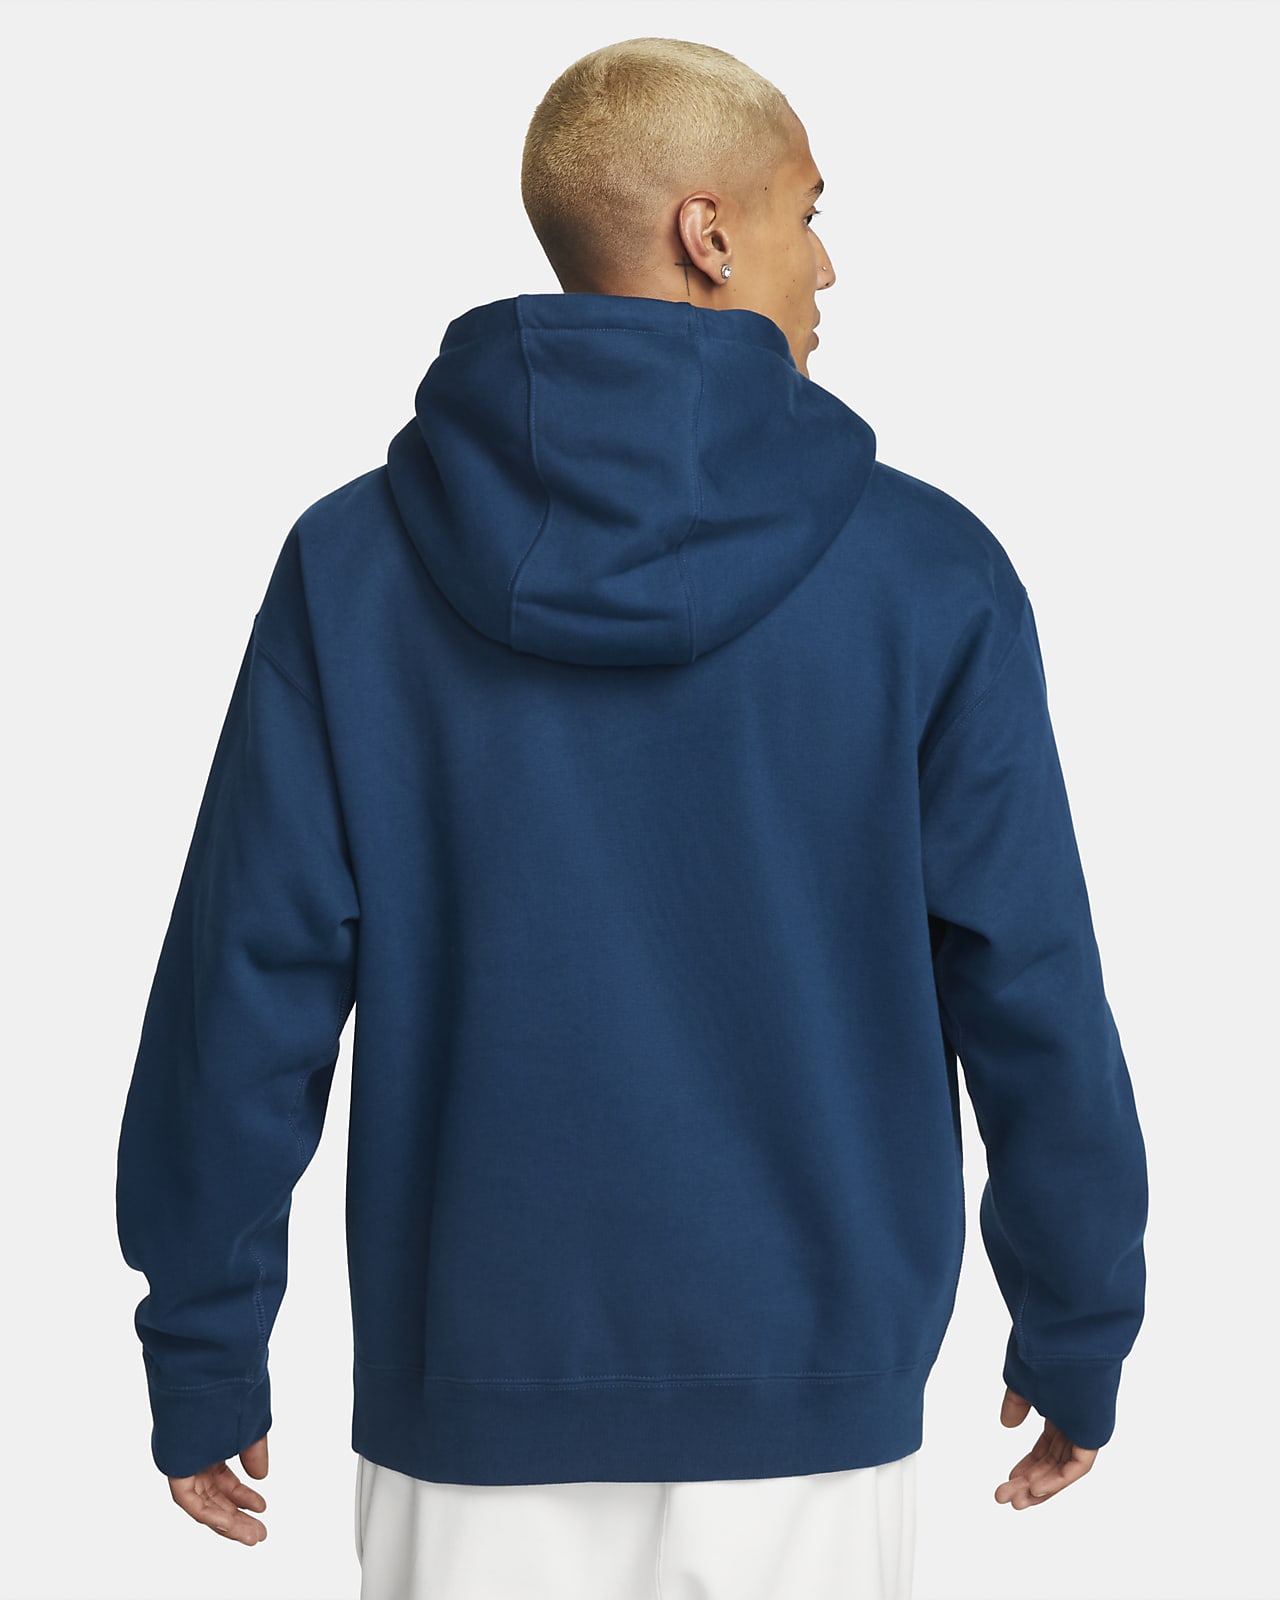 Rabatt 94 % Blau XS Quechua sweatshirt HERREN Pullovers & Sweatshirts Fleece 